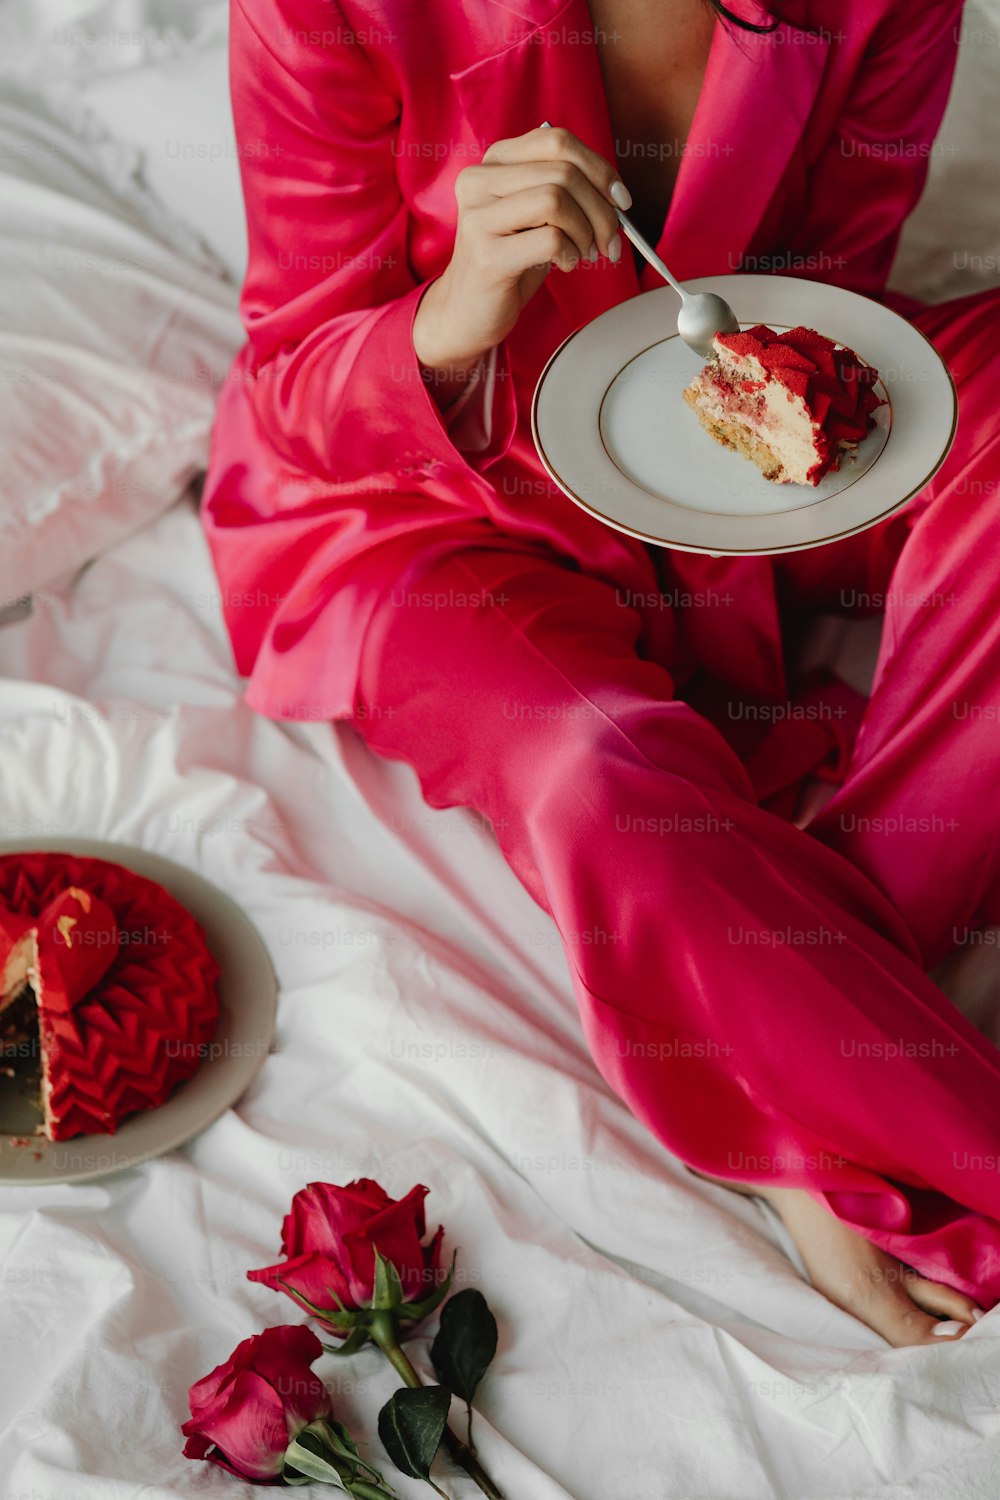 Una mujer con un traje rosa comiendo un pedazo de pastel